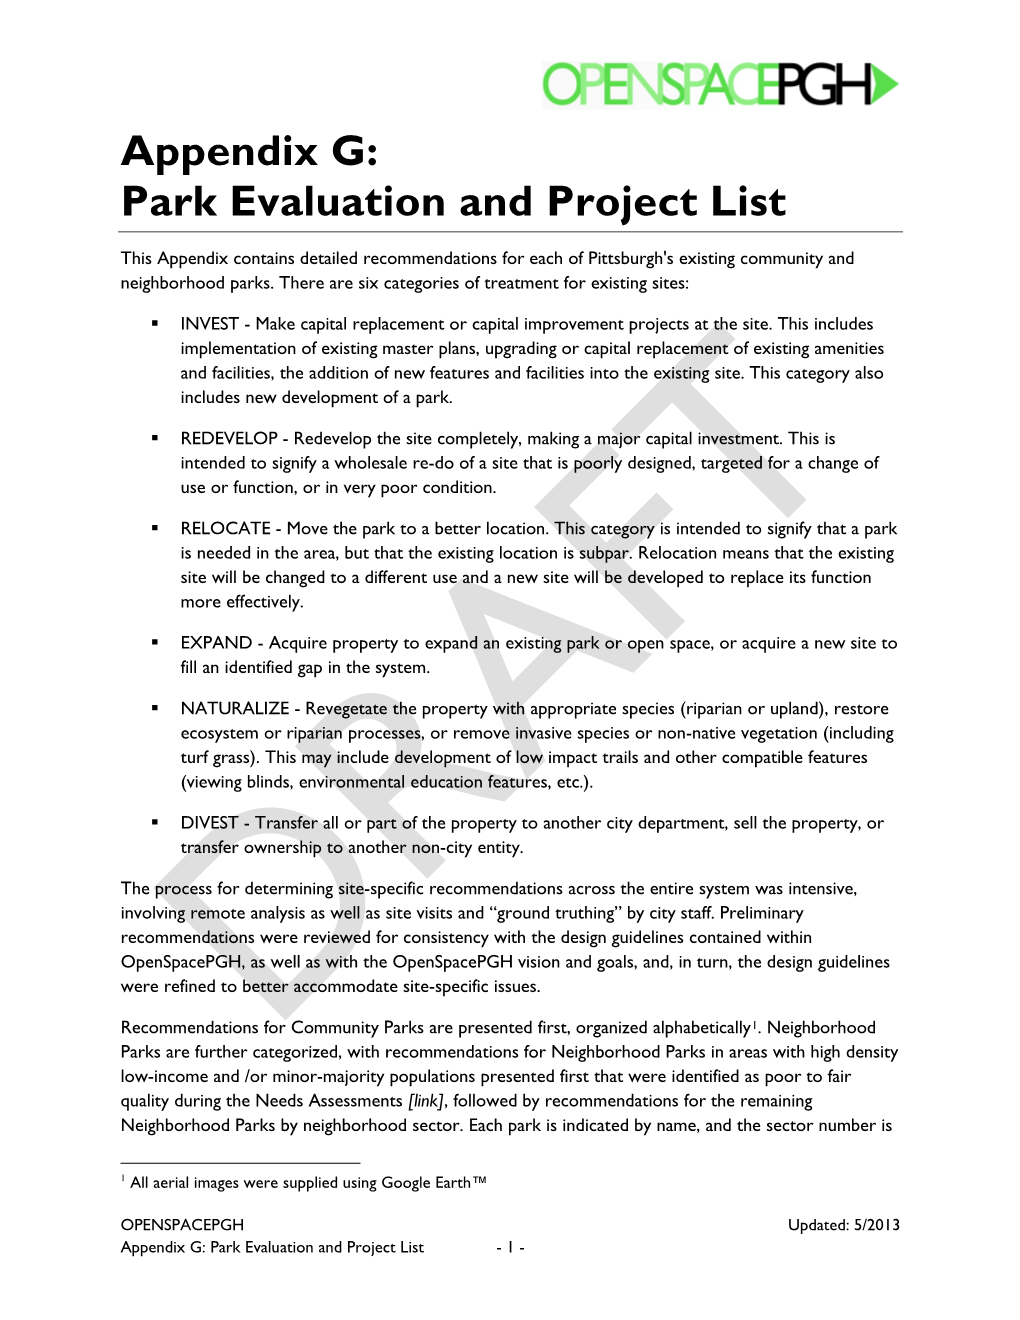 Appendix G: Park Evaluation and Project List